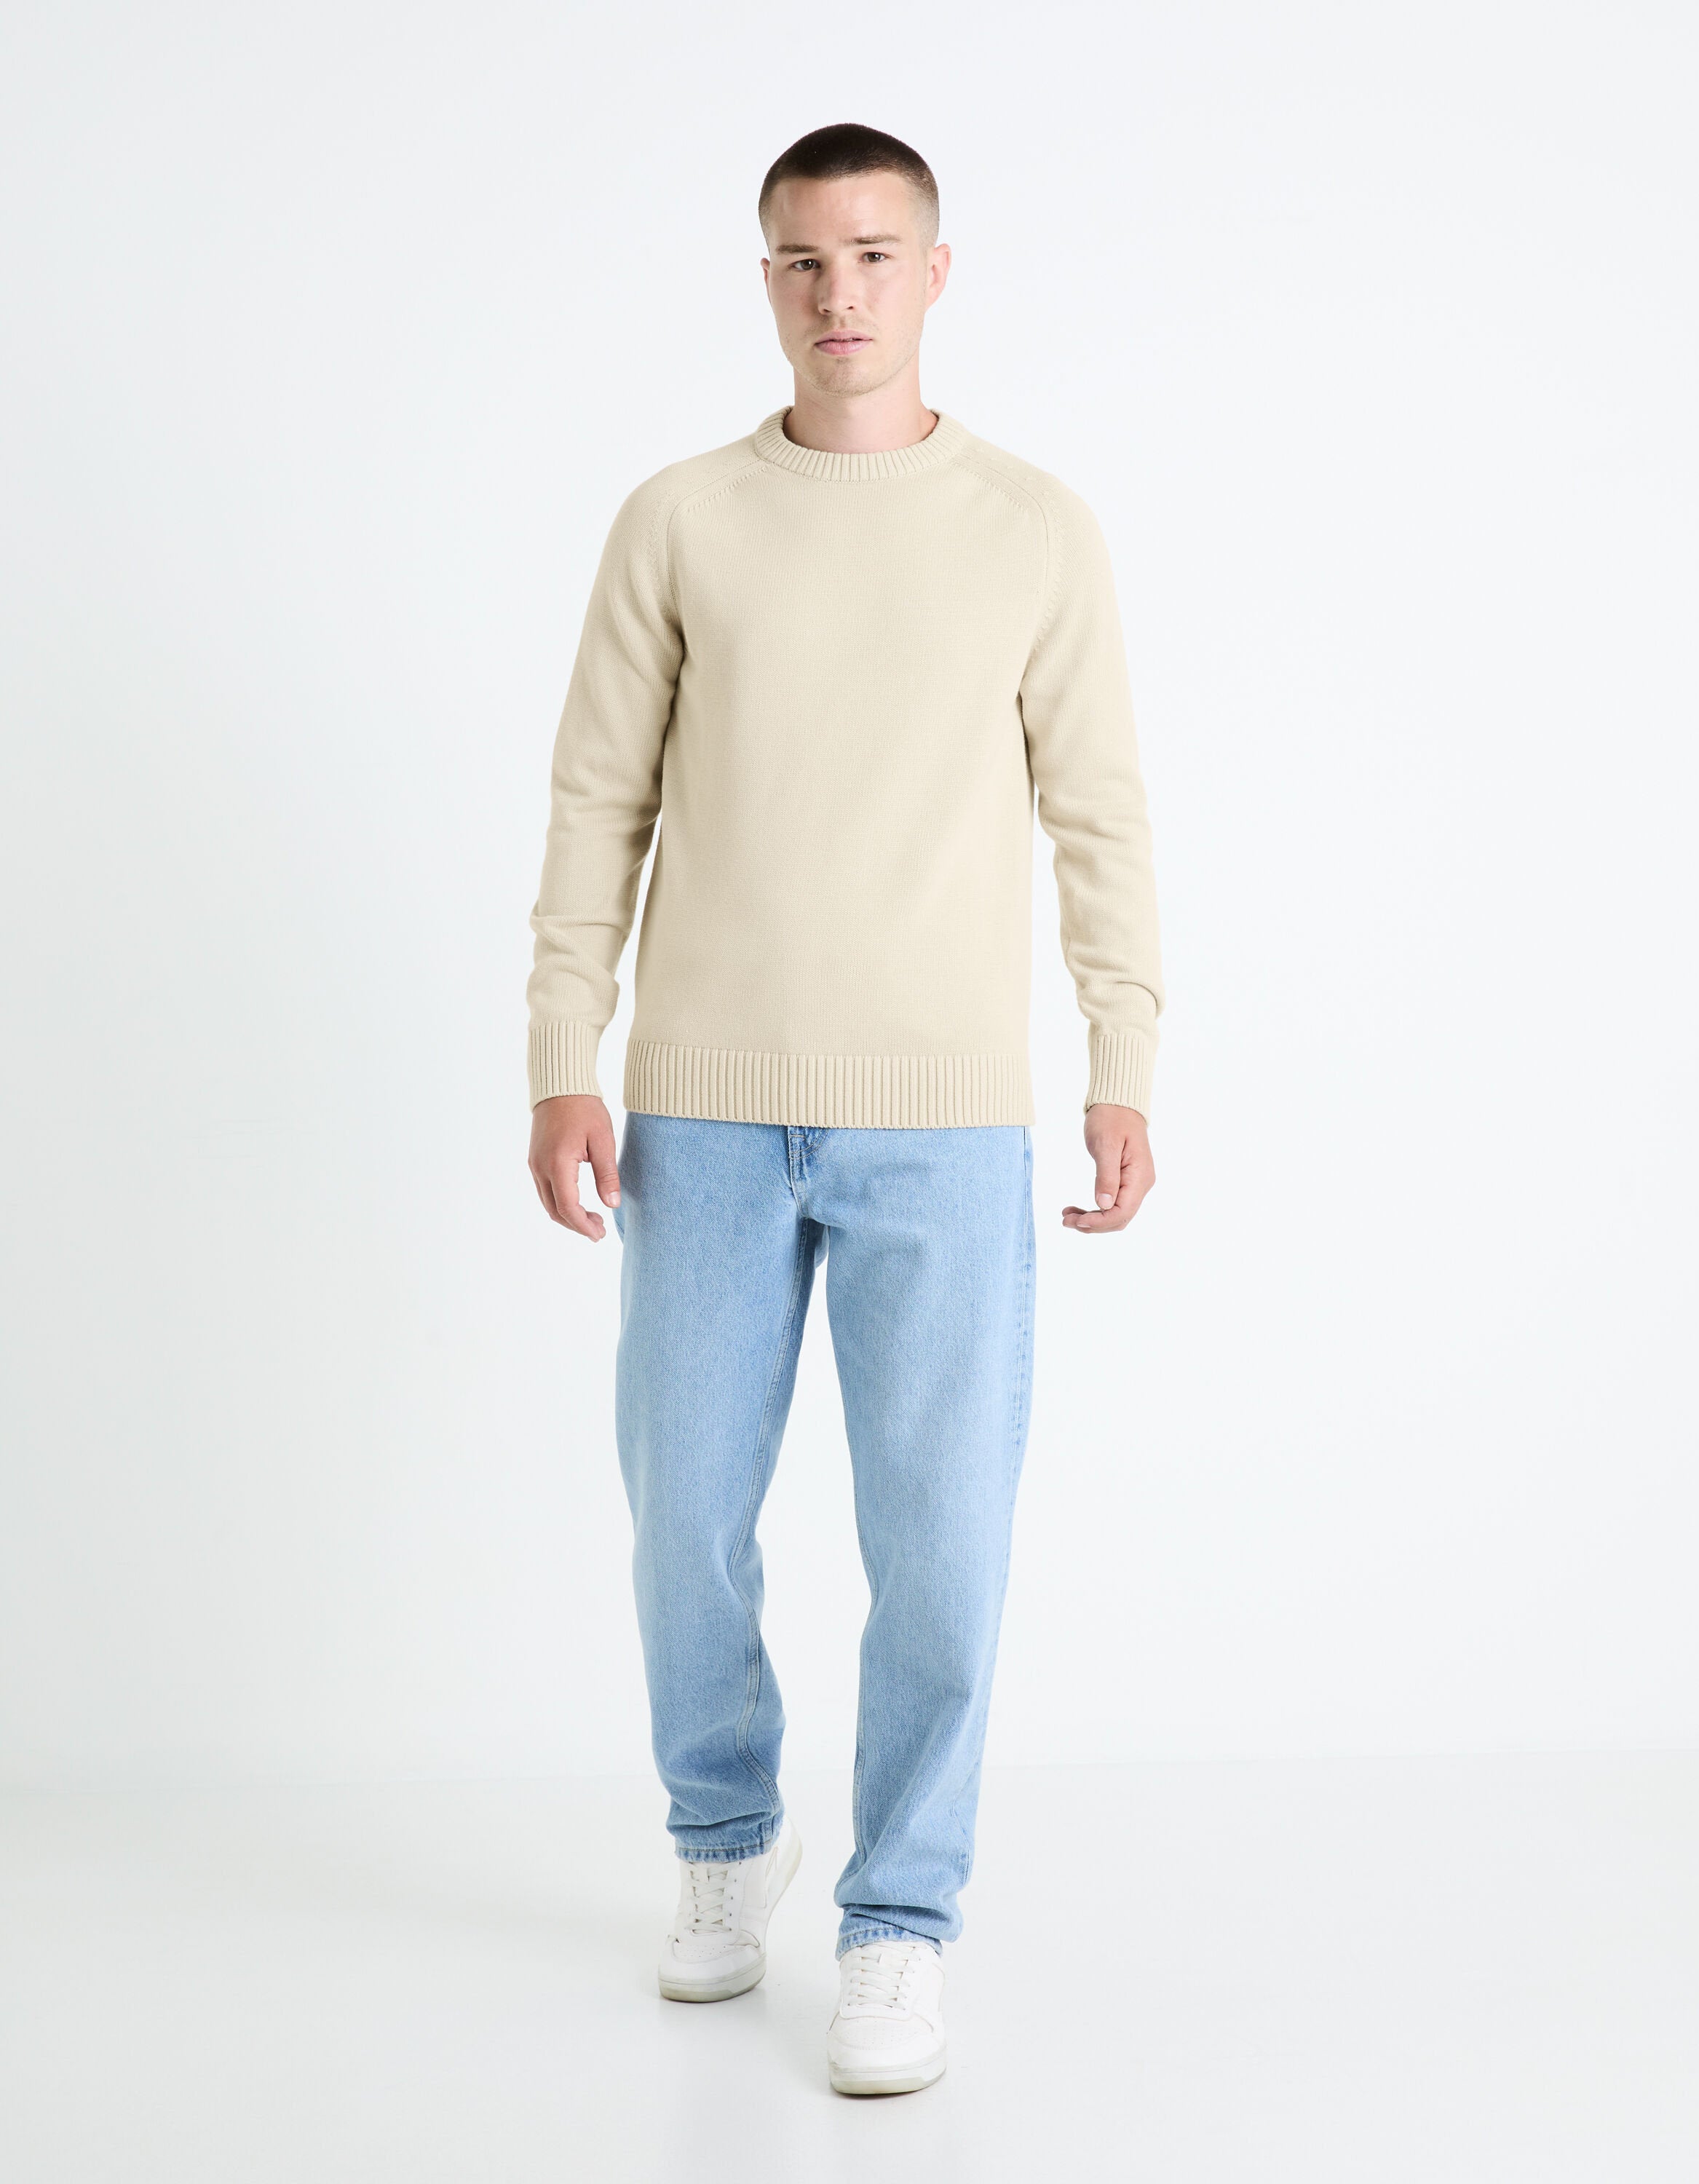 100% Cotton Round Neck Sweater - Beige_FEBASIC_LIGHT BEIGE_03